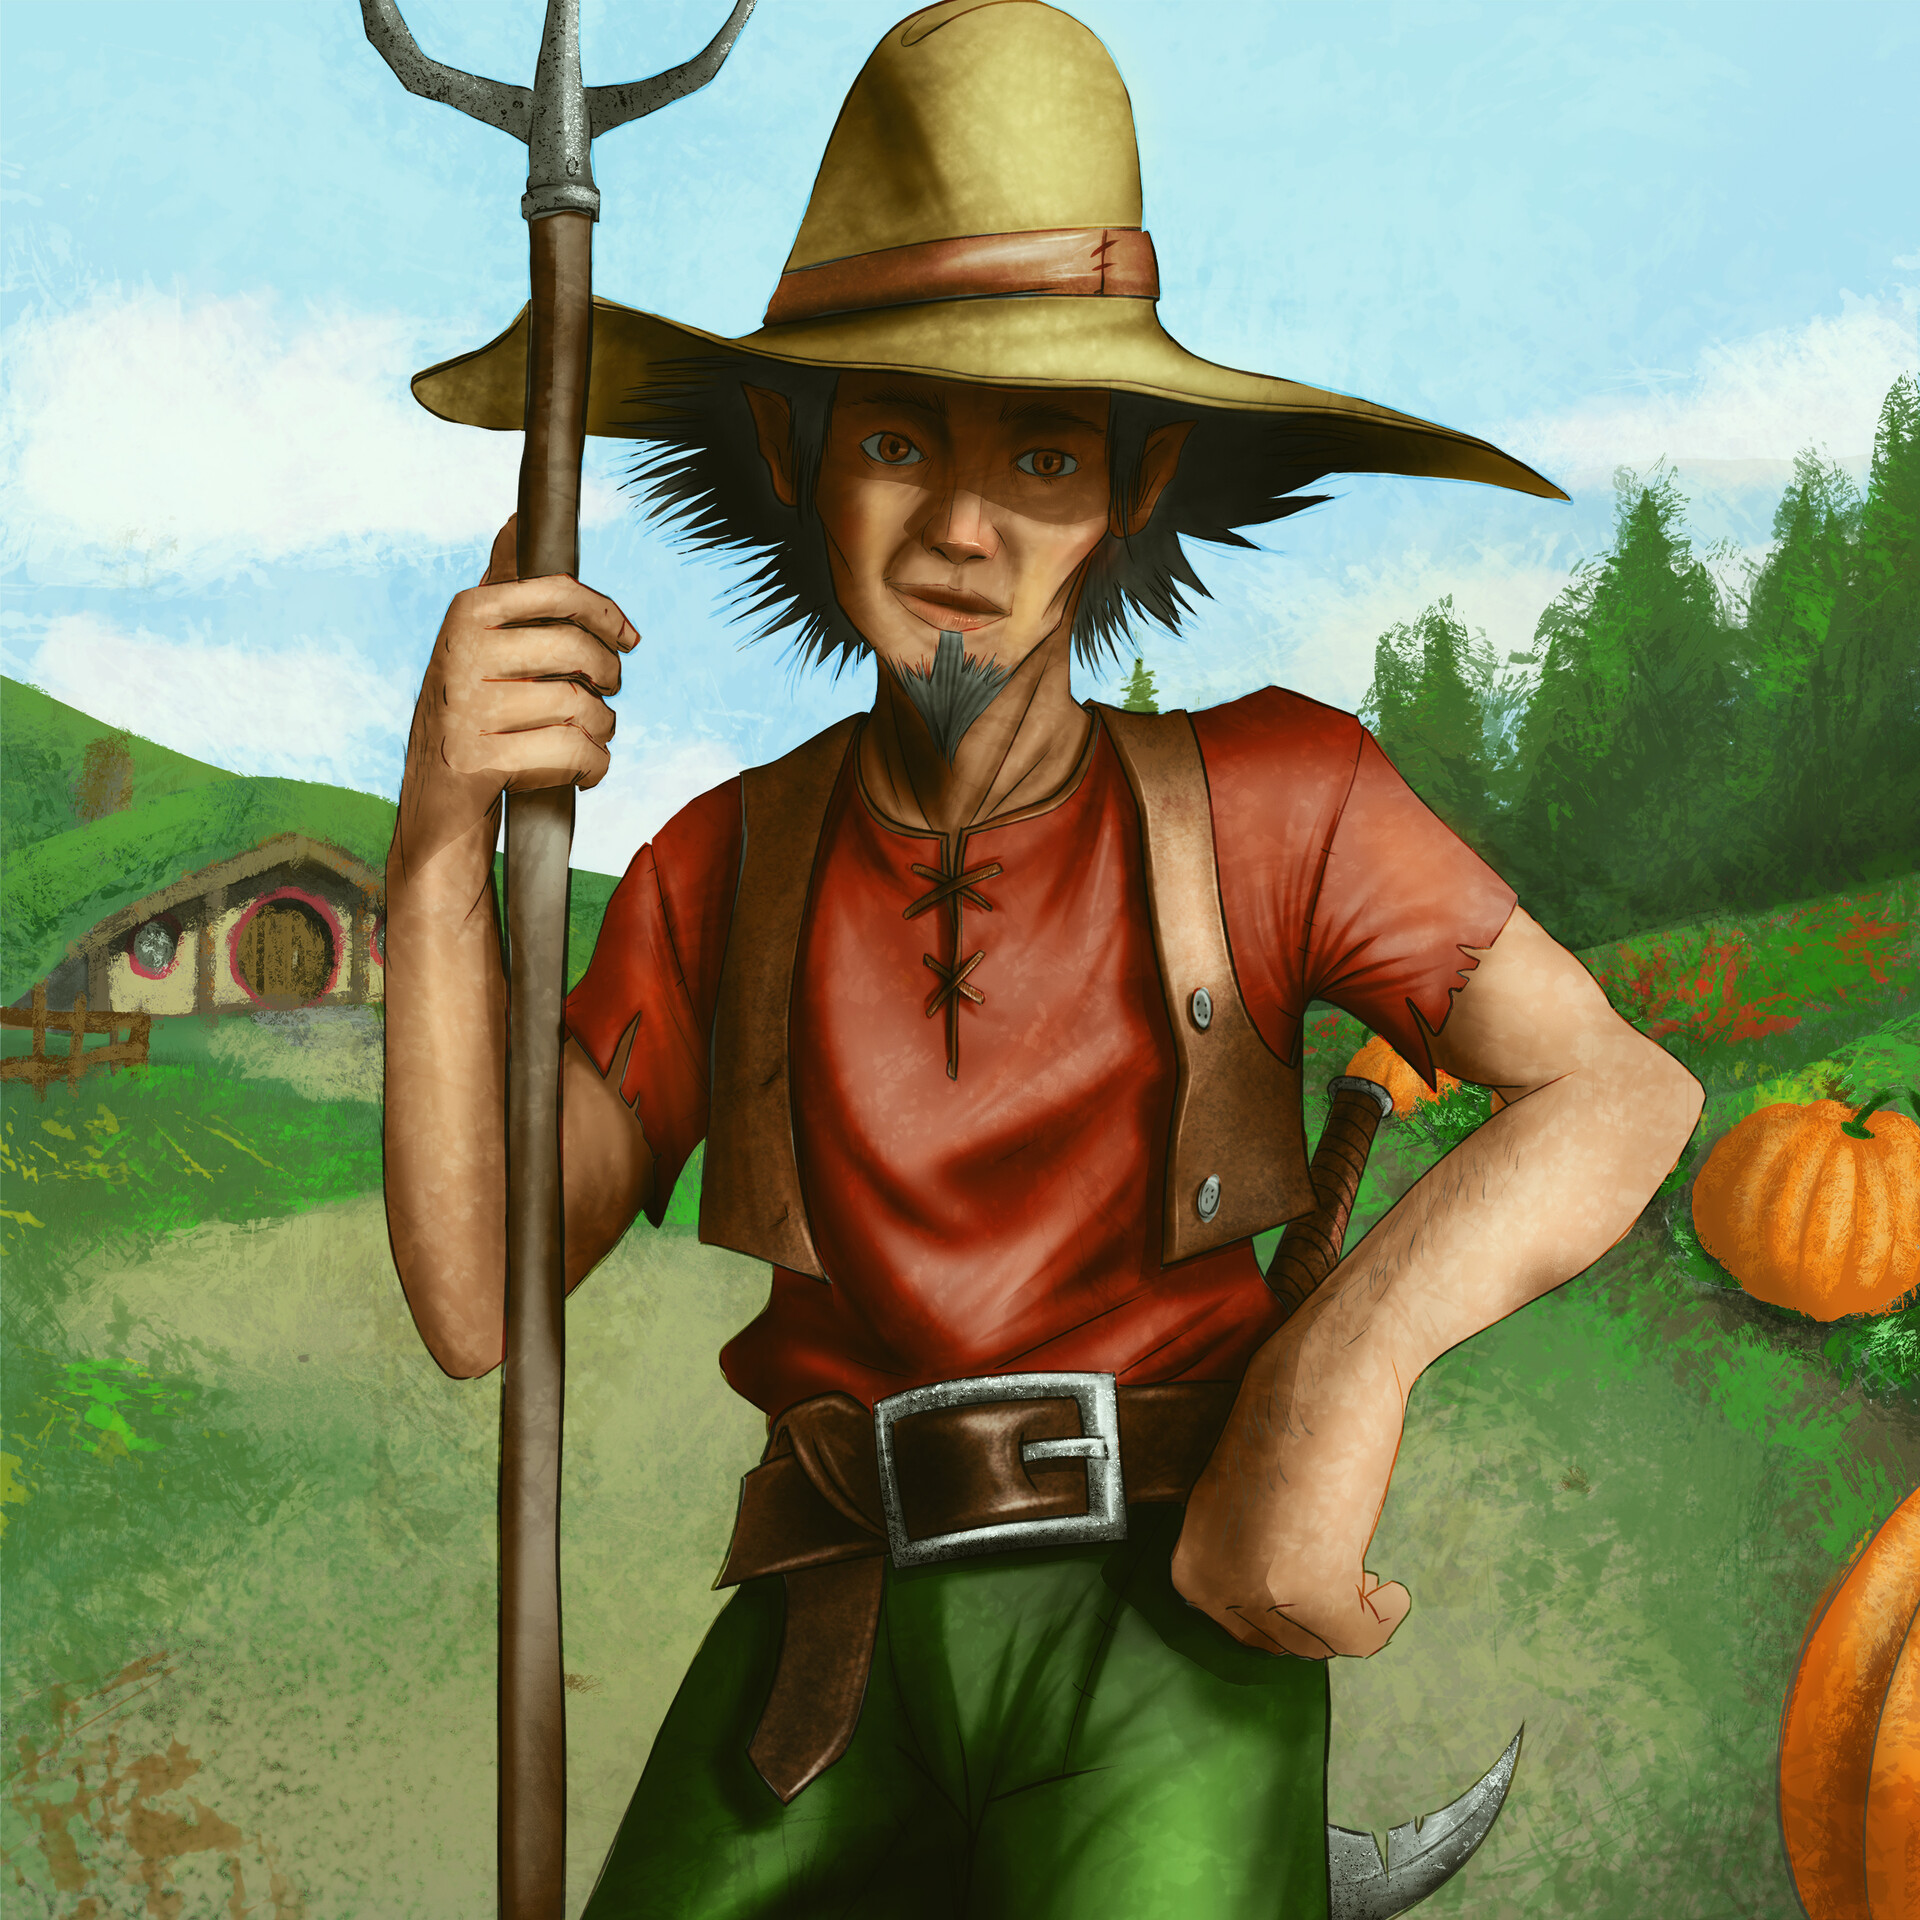 ArtStation - Hobbit Farmer